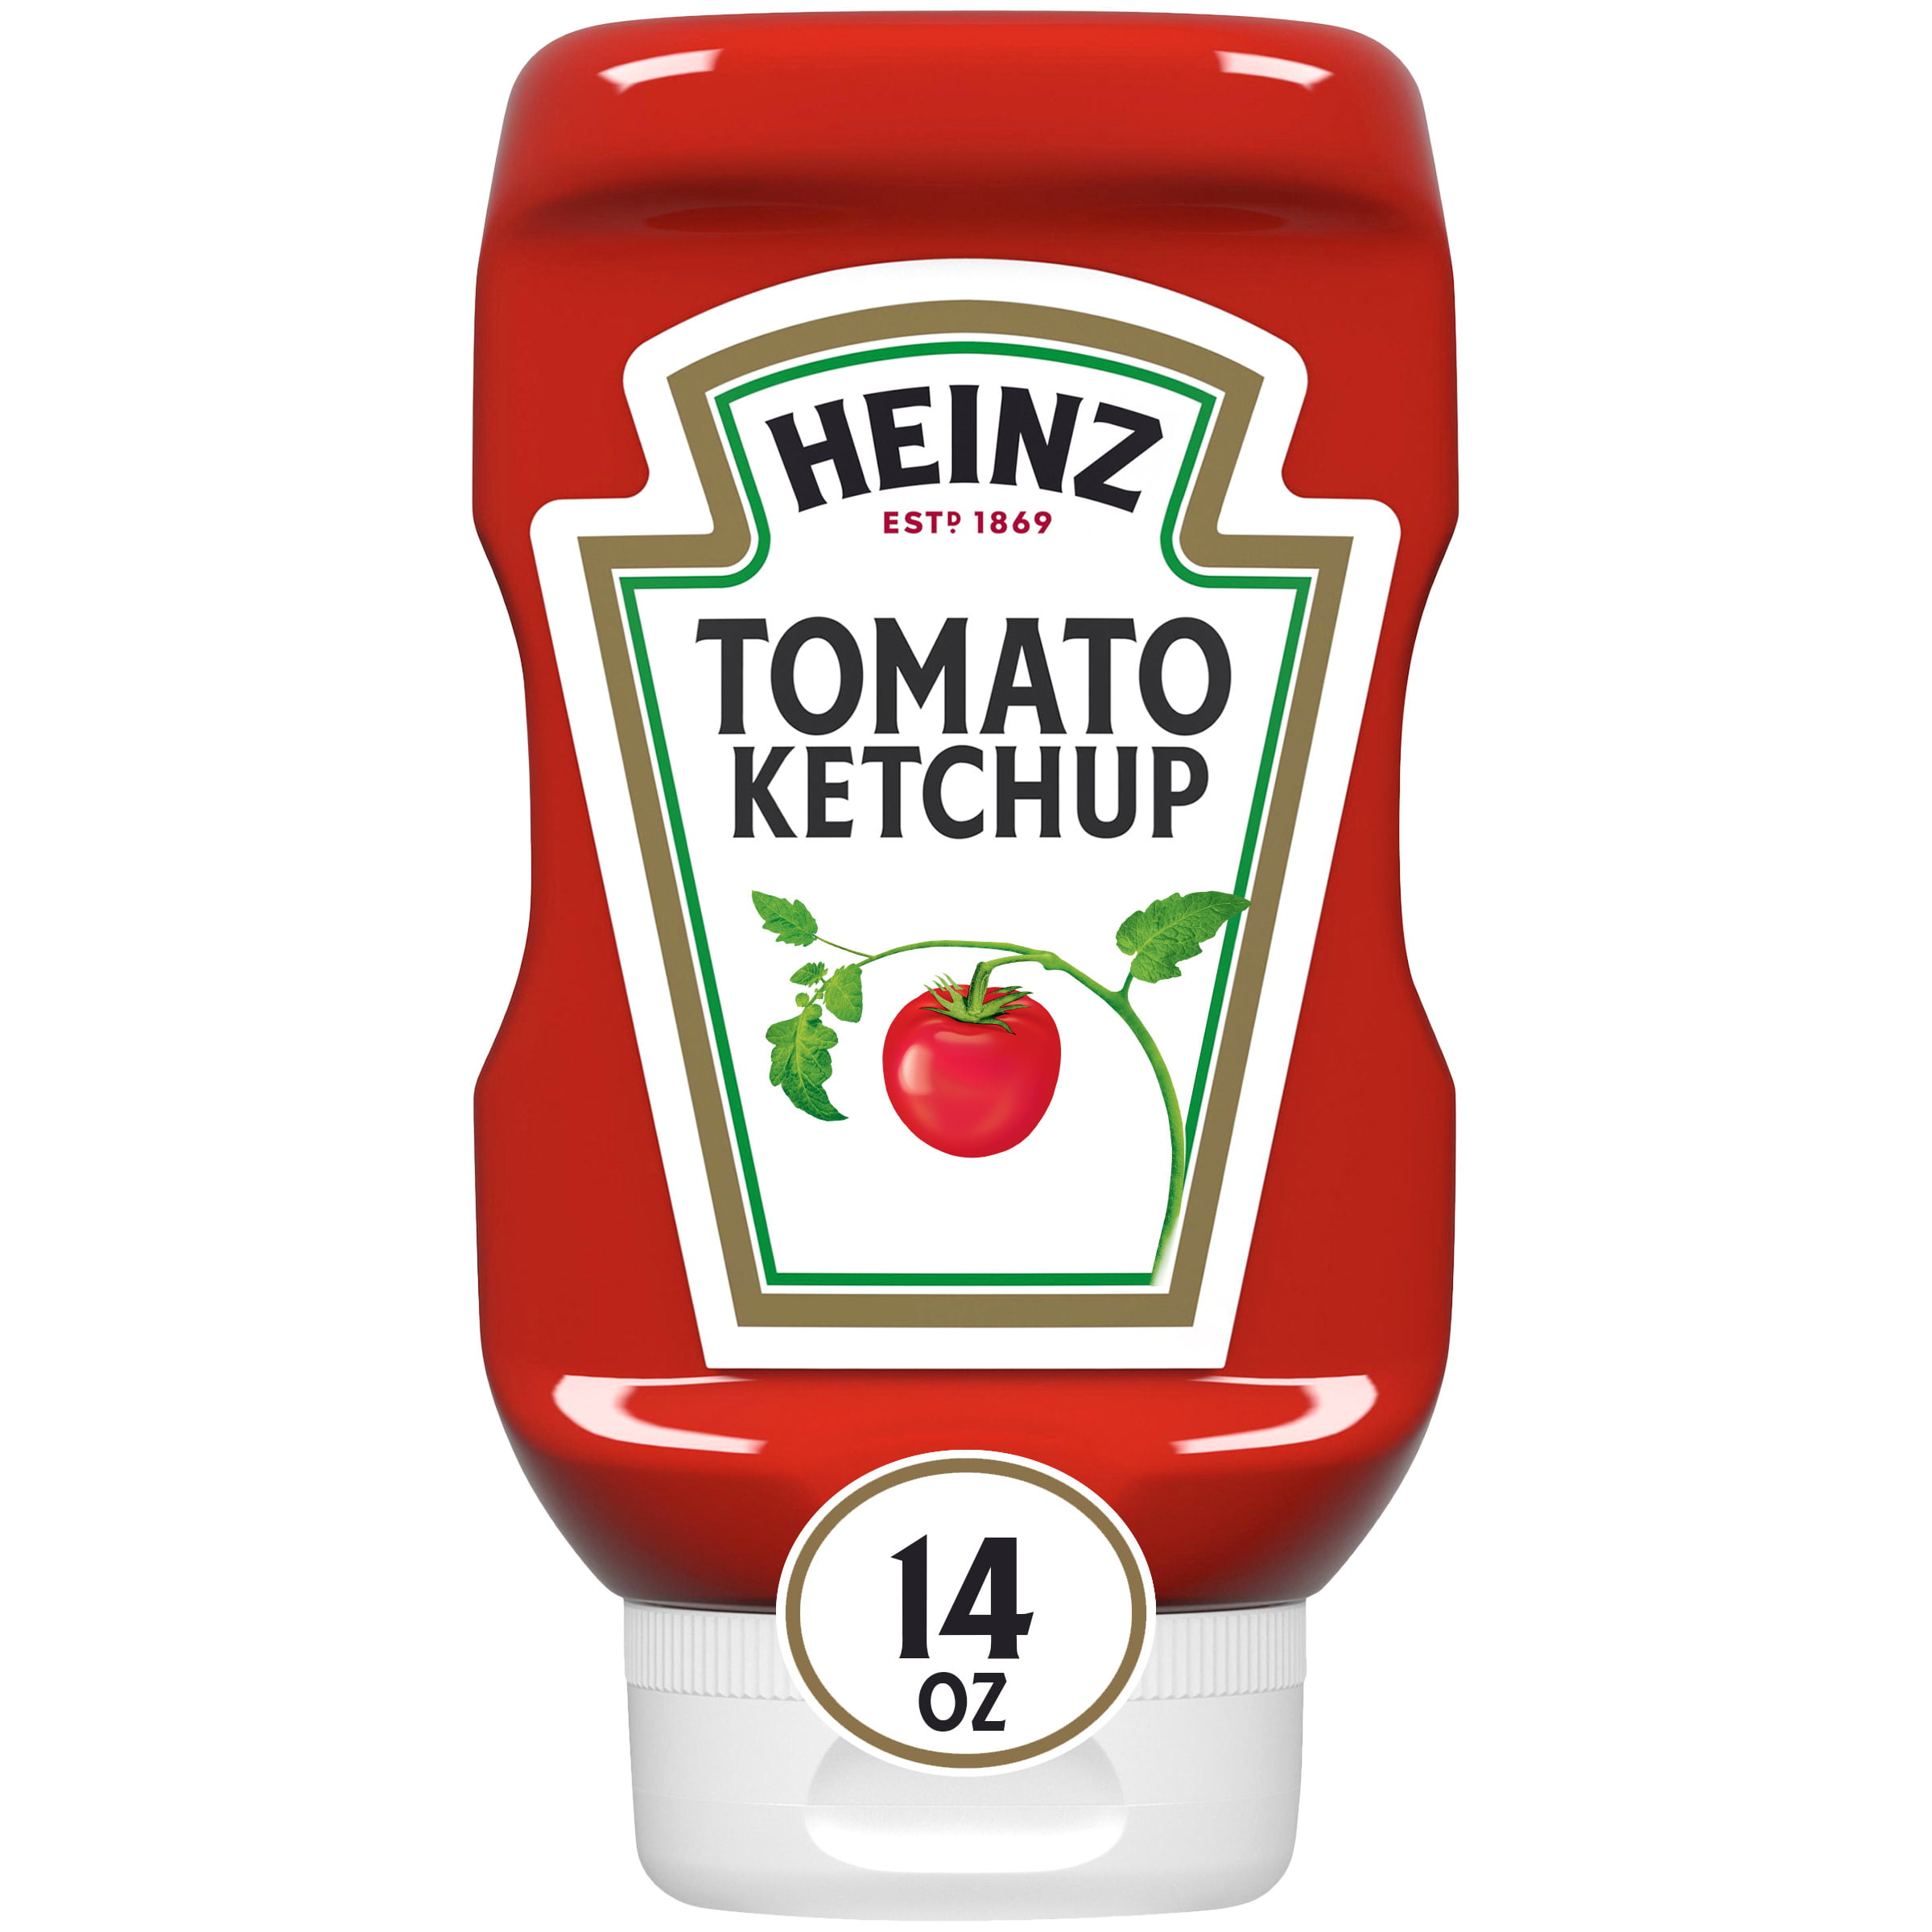 Printable Ketchup Label - Printable World Holiday